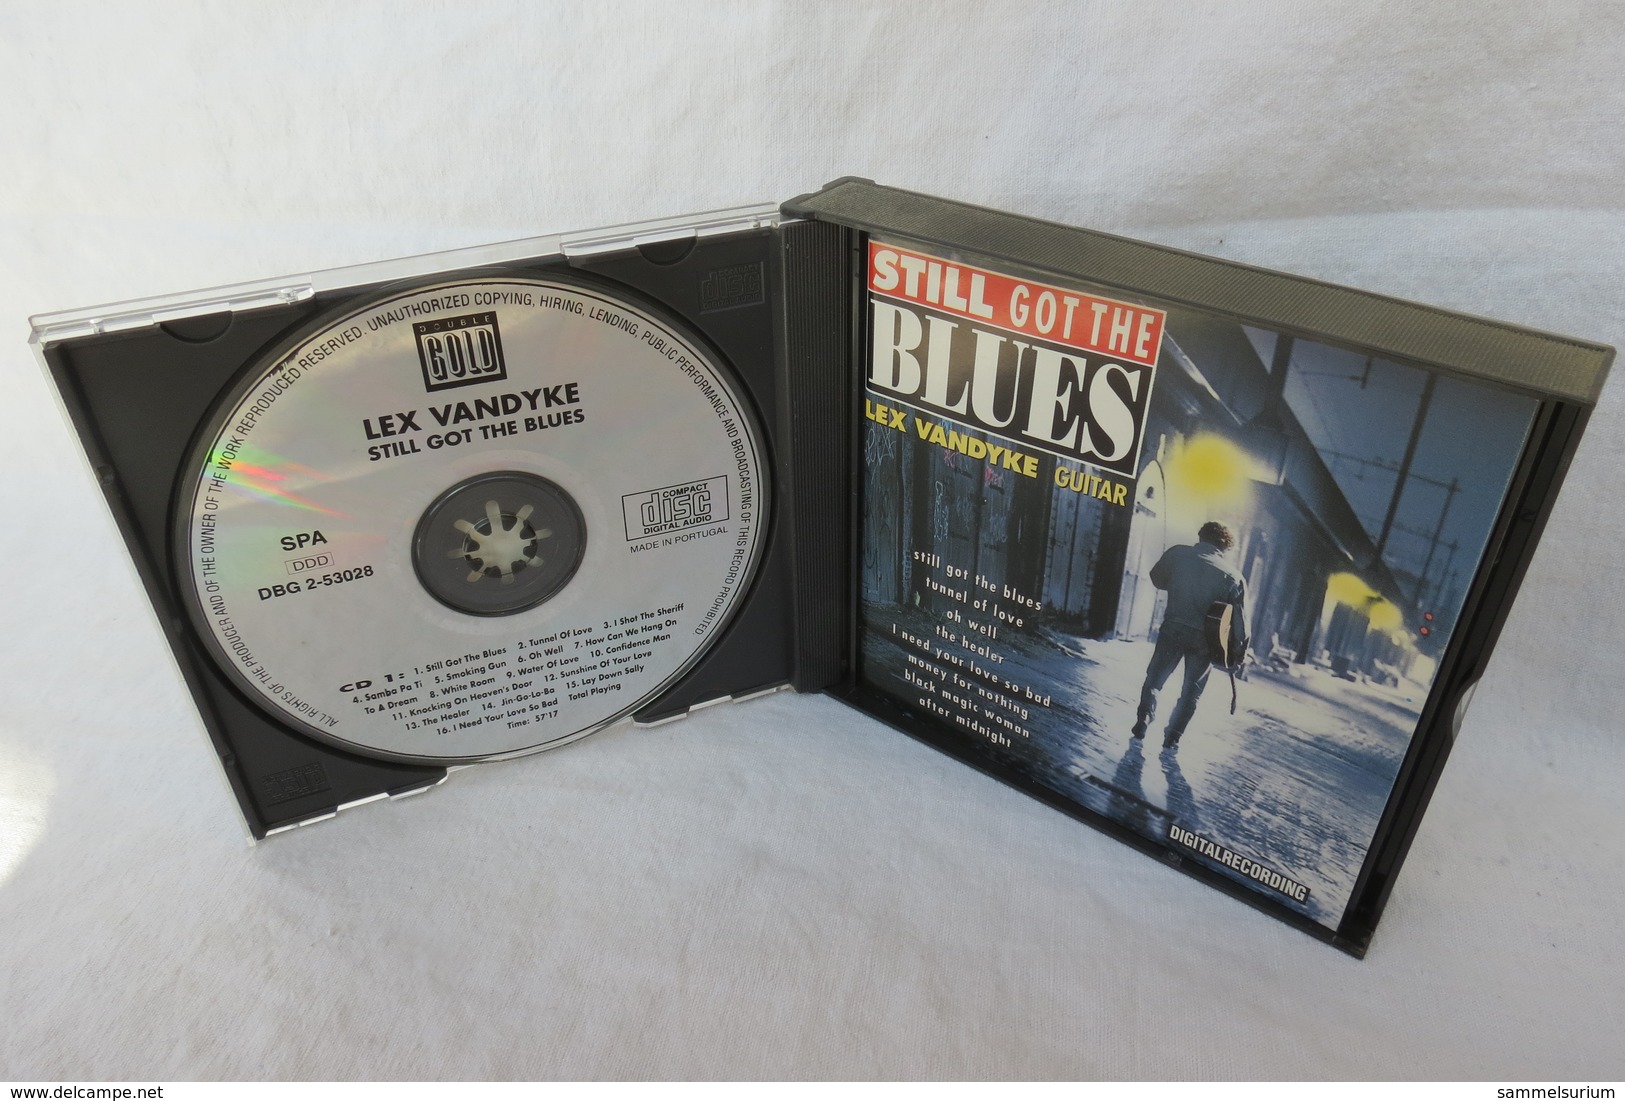 2 CDs "Lex Vandyke" Still Got The Blues, Guitar - Blues